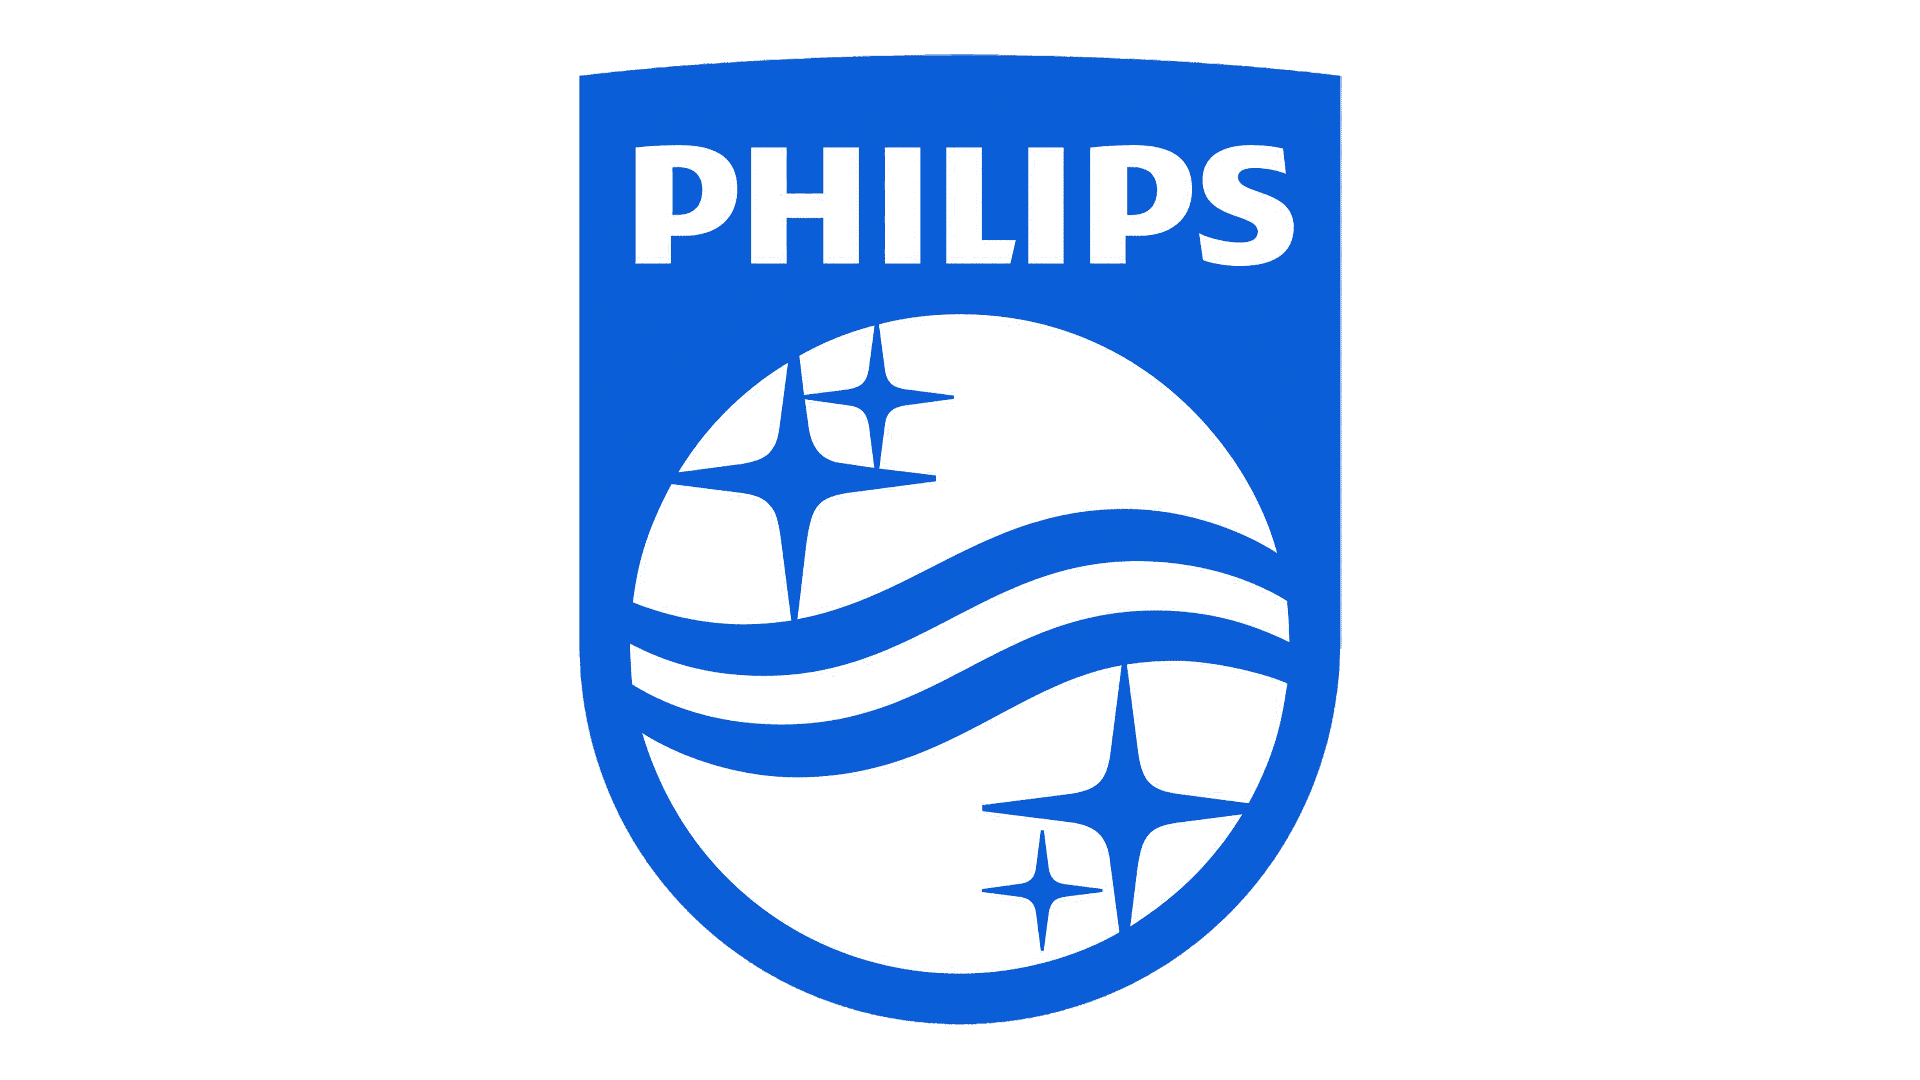 Brand: Philips